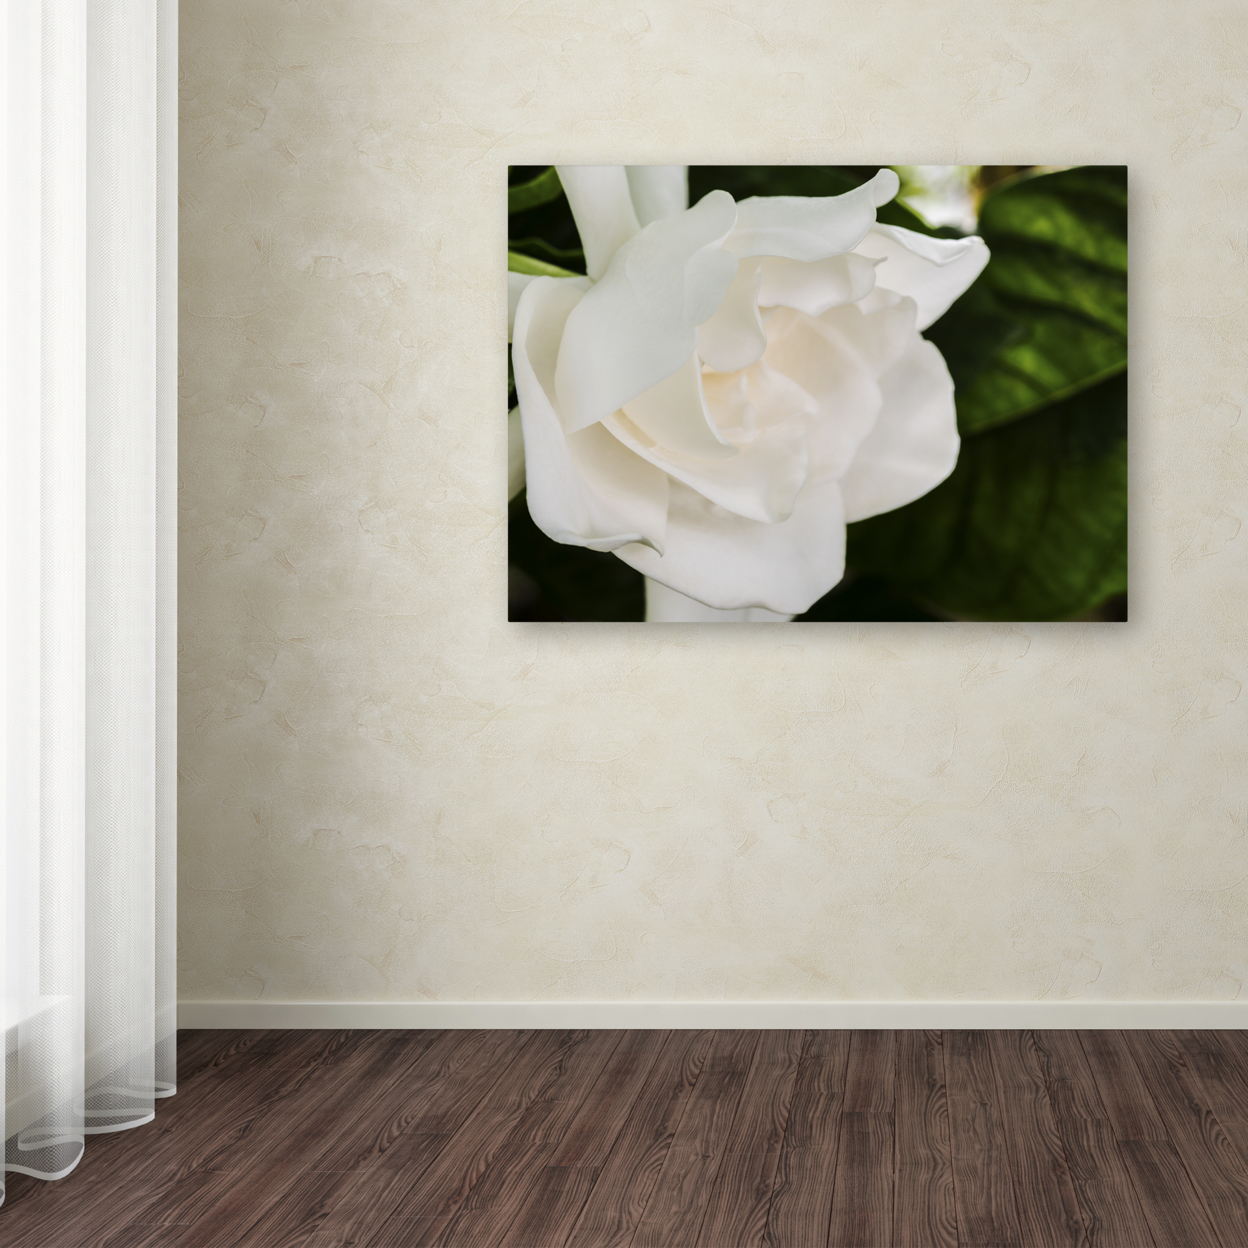 Kurt Shaffer 'Gardenia' Canvas Art